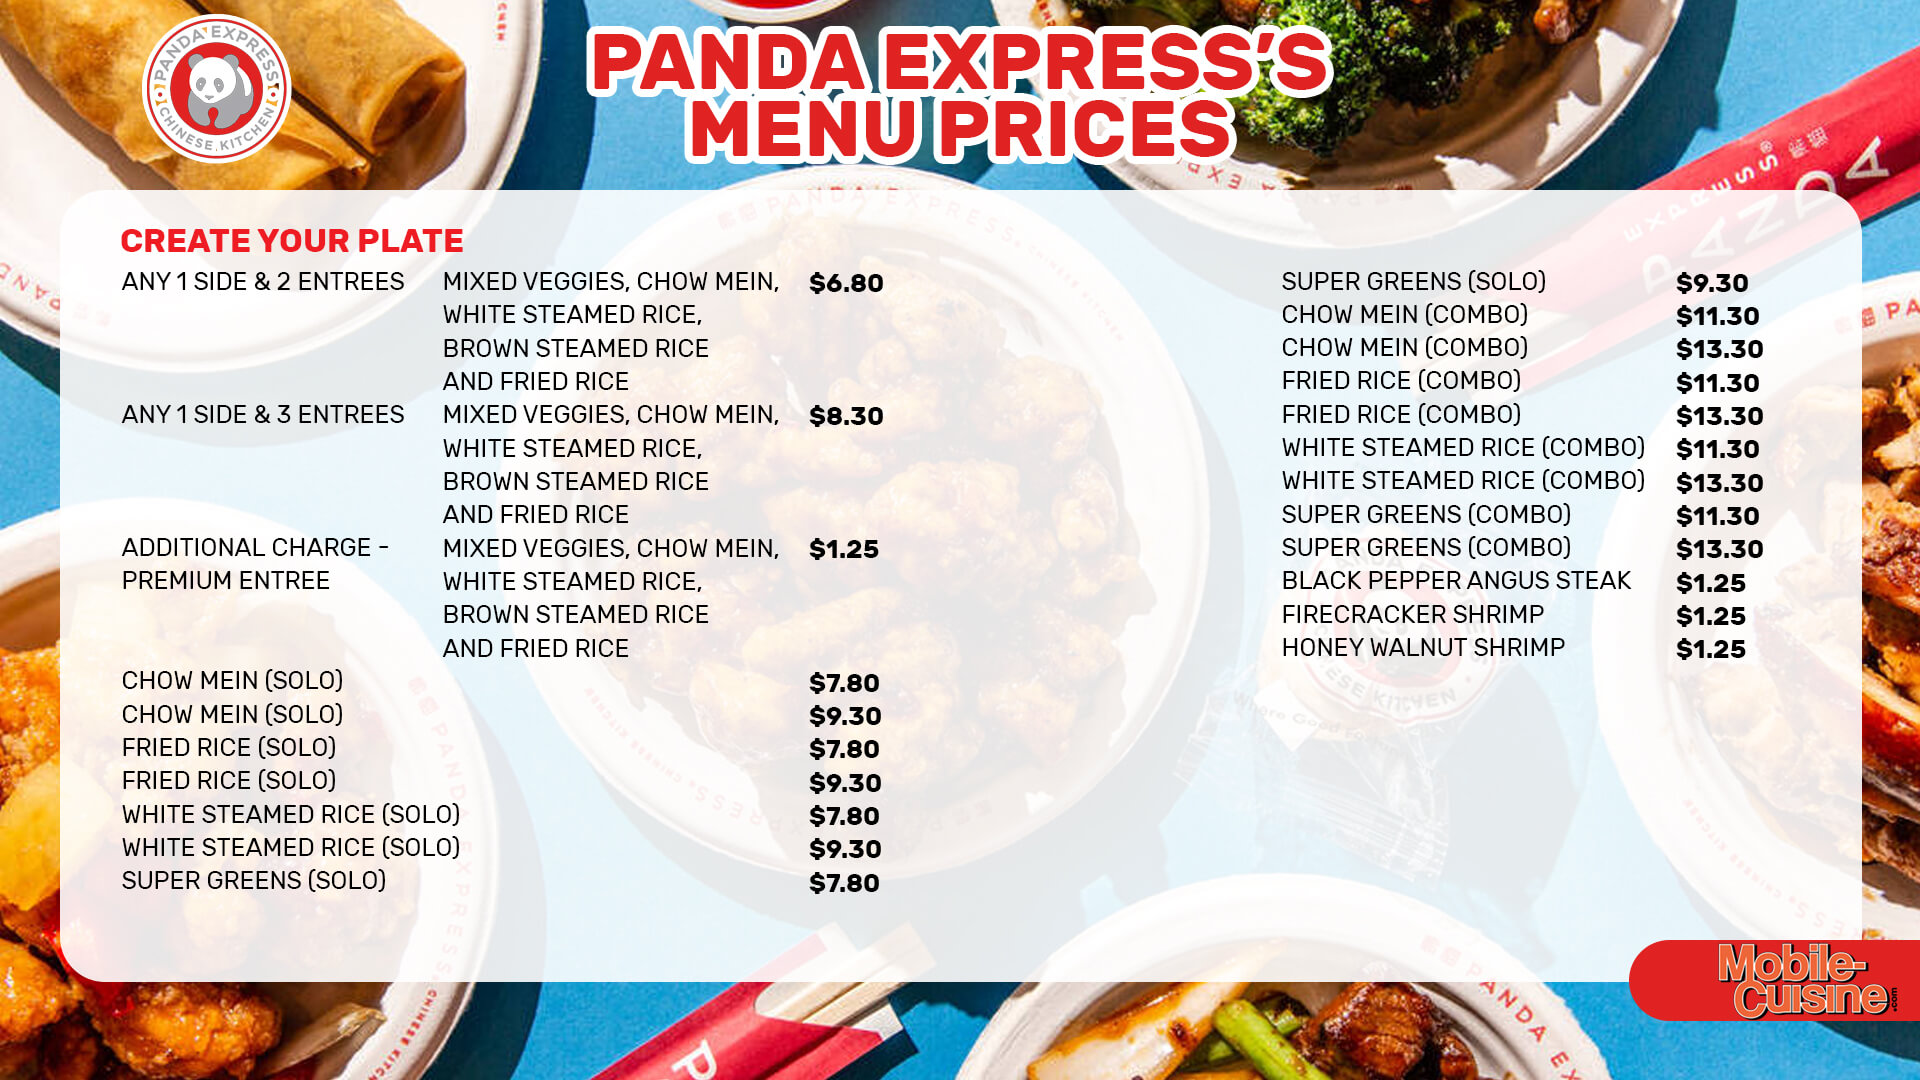 Panda Express menu items